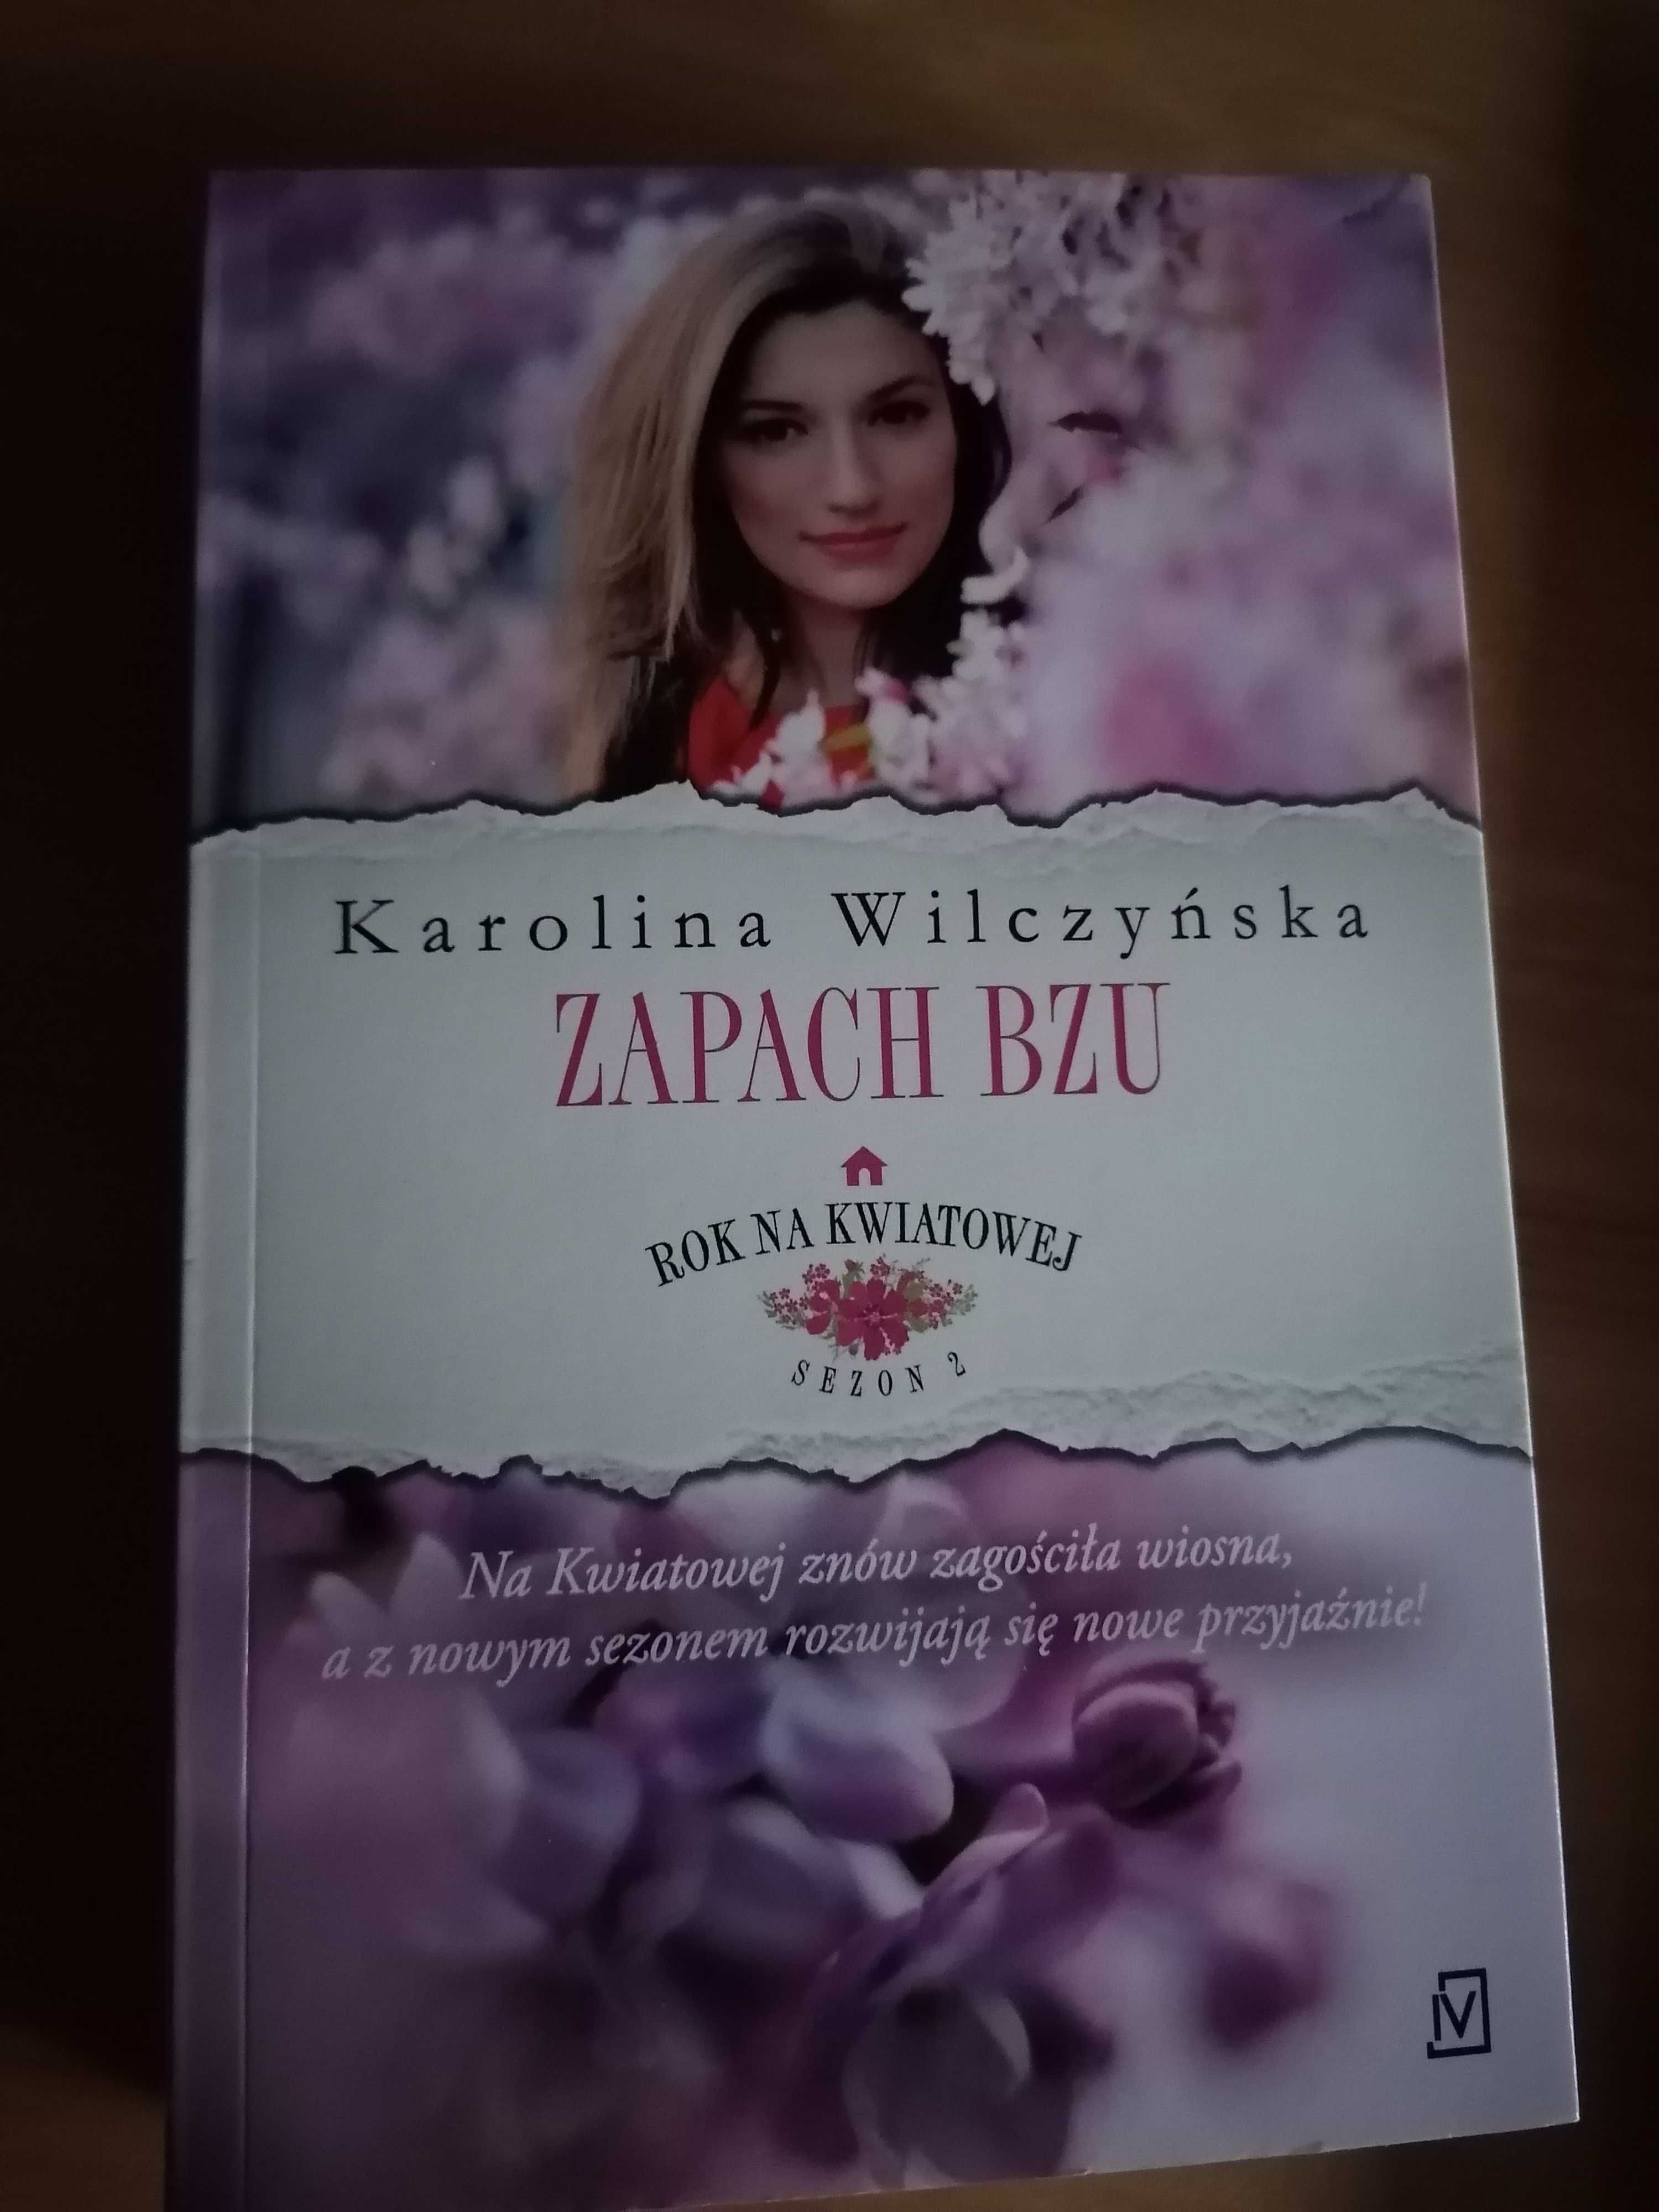 Książka - "Zapach bzu"